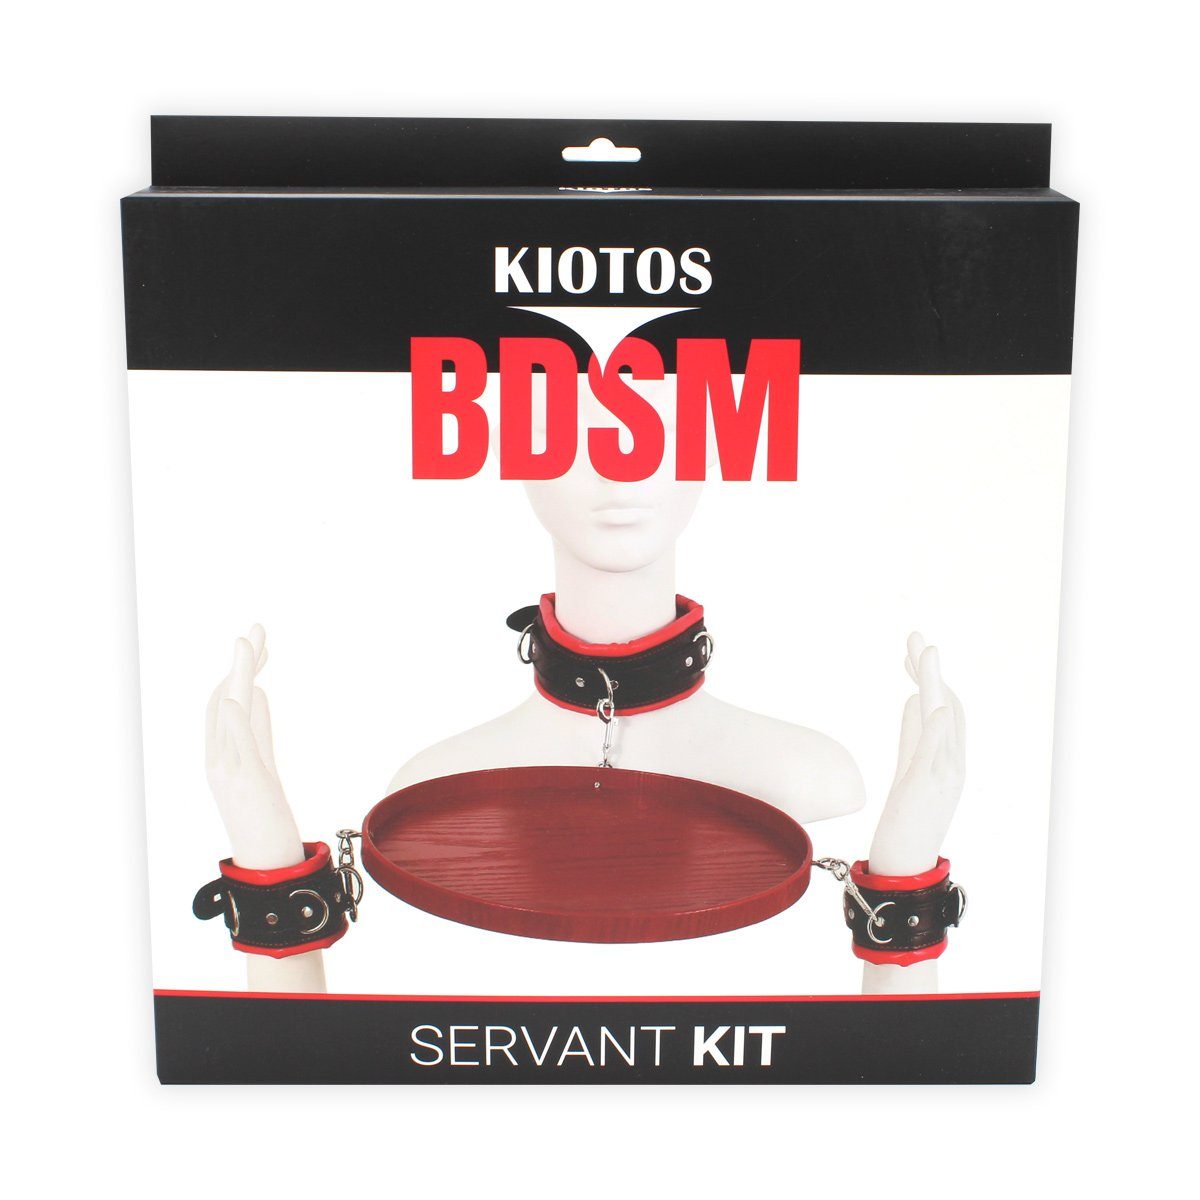 KIOTOS Handfesseln Kiotos BDSM Servant Kit